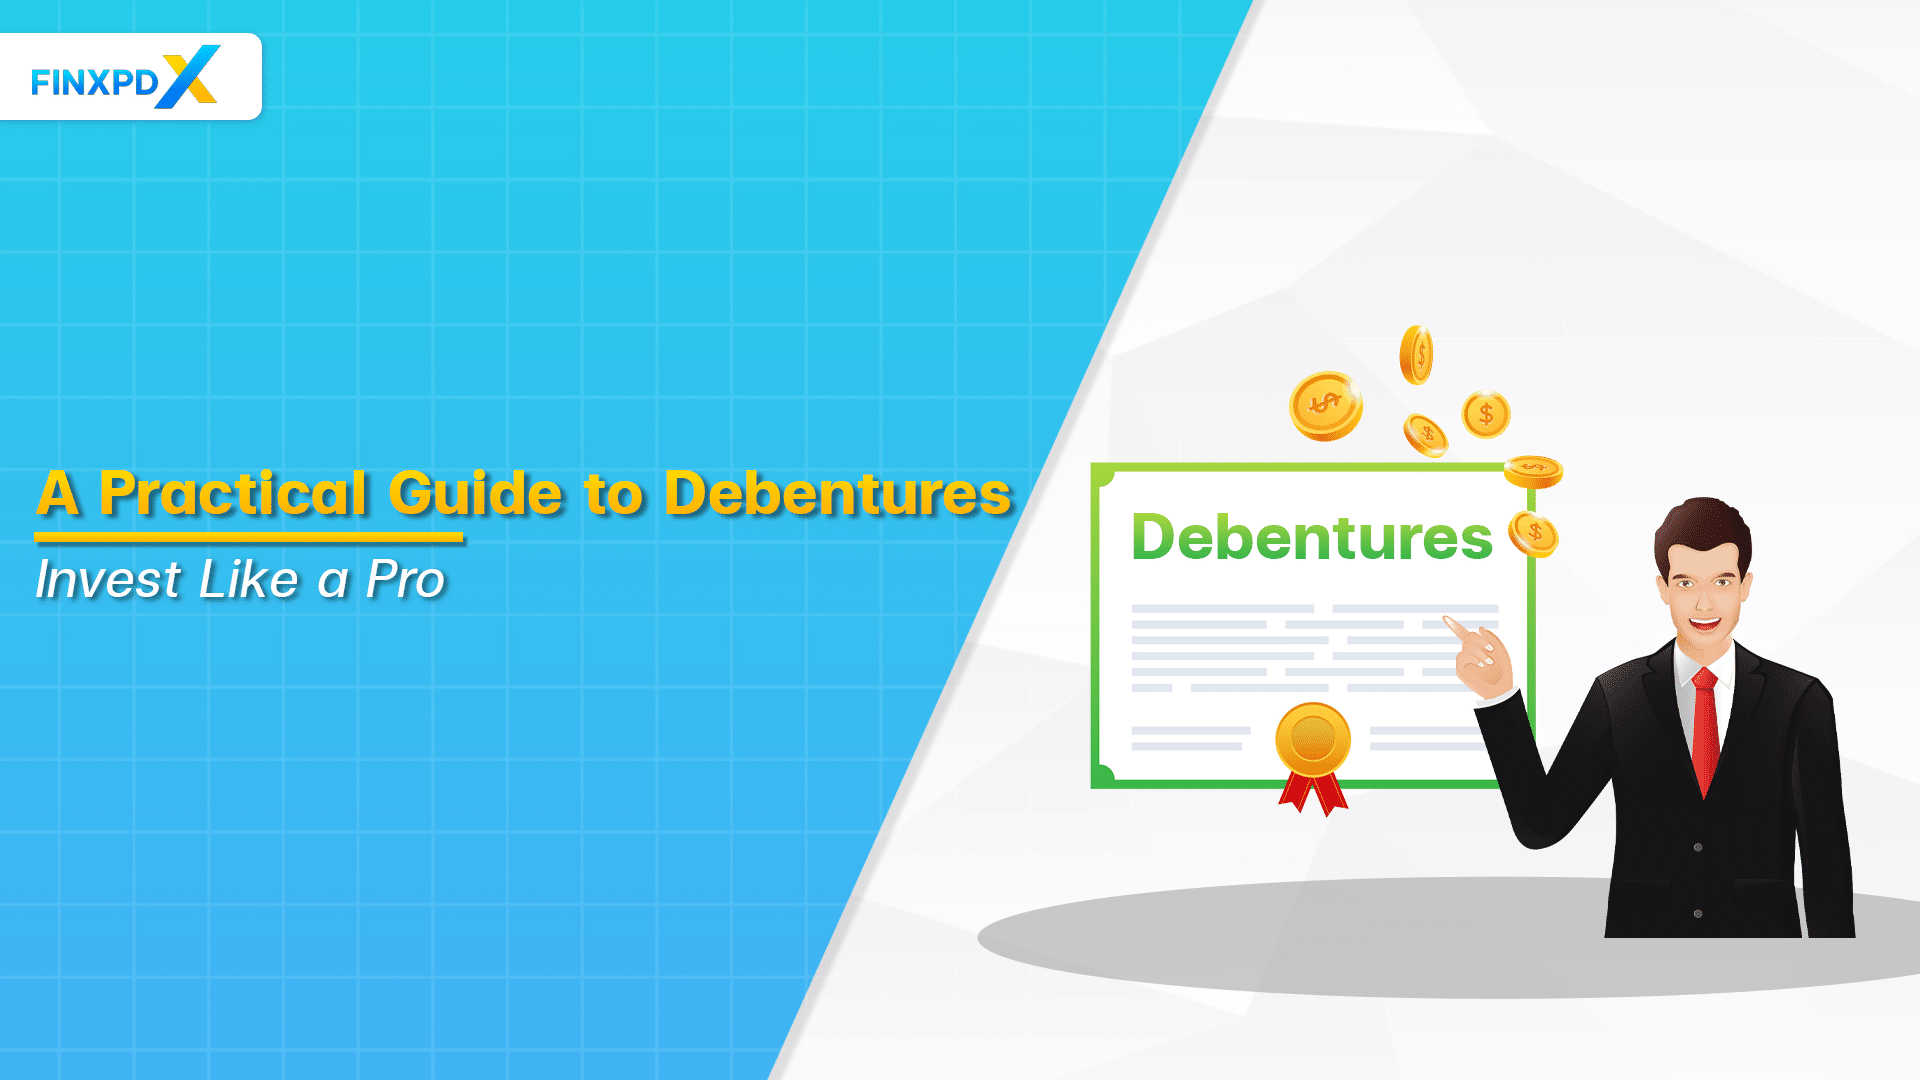 What is debentures